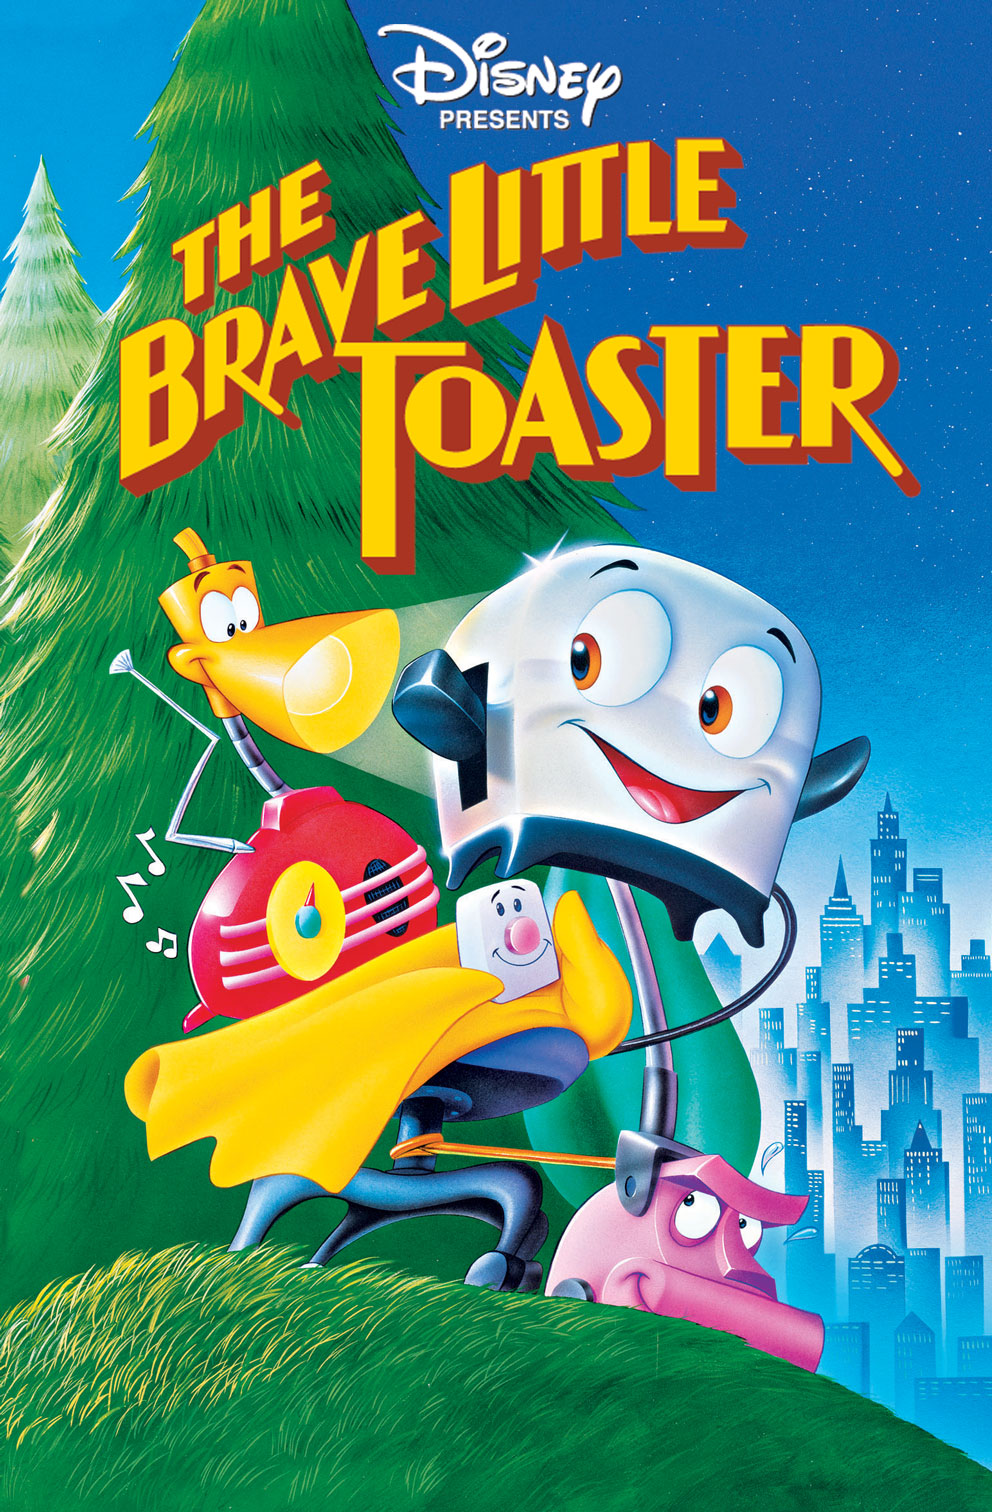 Brave Little Toaster Animation Cels